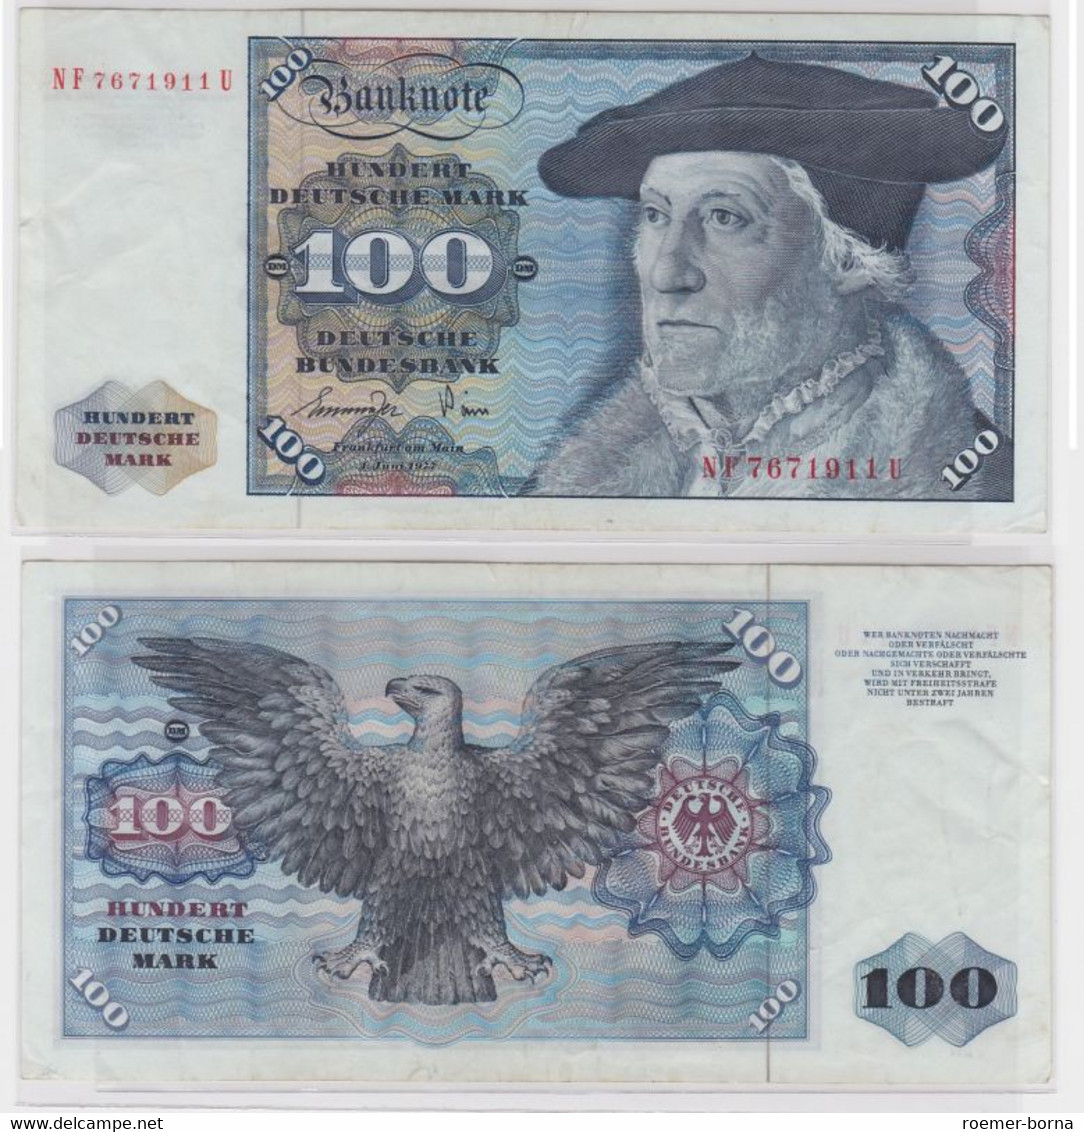 T146731 Banknote 100 DM Deutsche Mark Ro 278a Schein 1.Juni 1977 KN NF 7671911 U - 100 Deutsche Mark